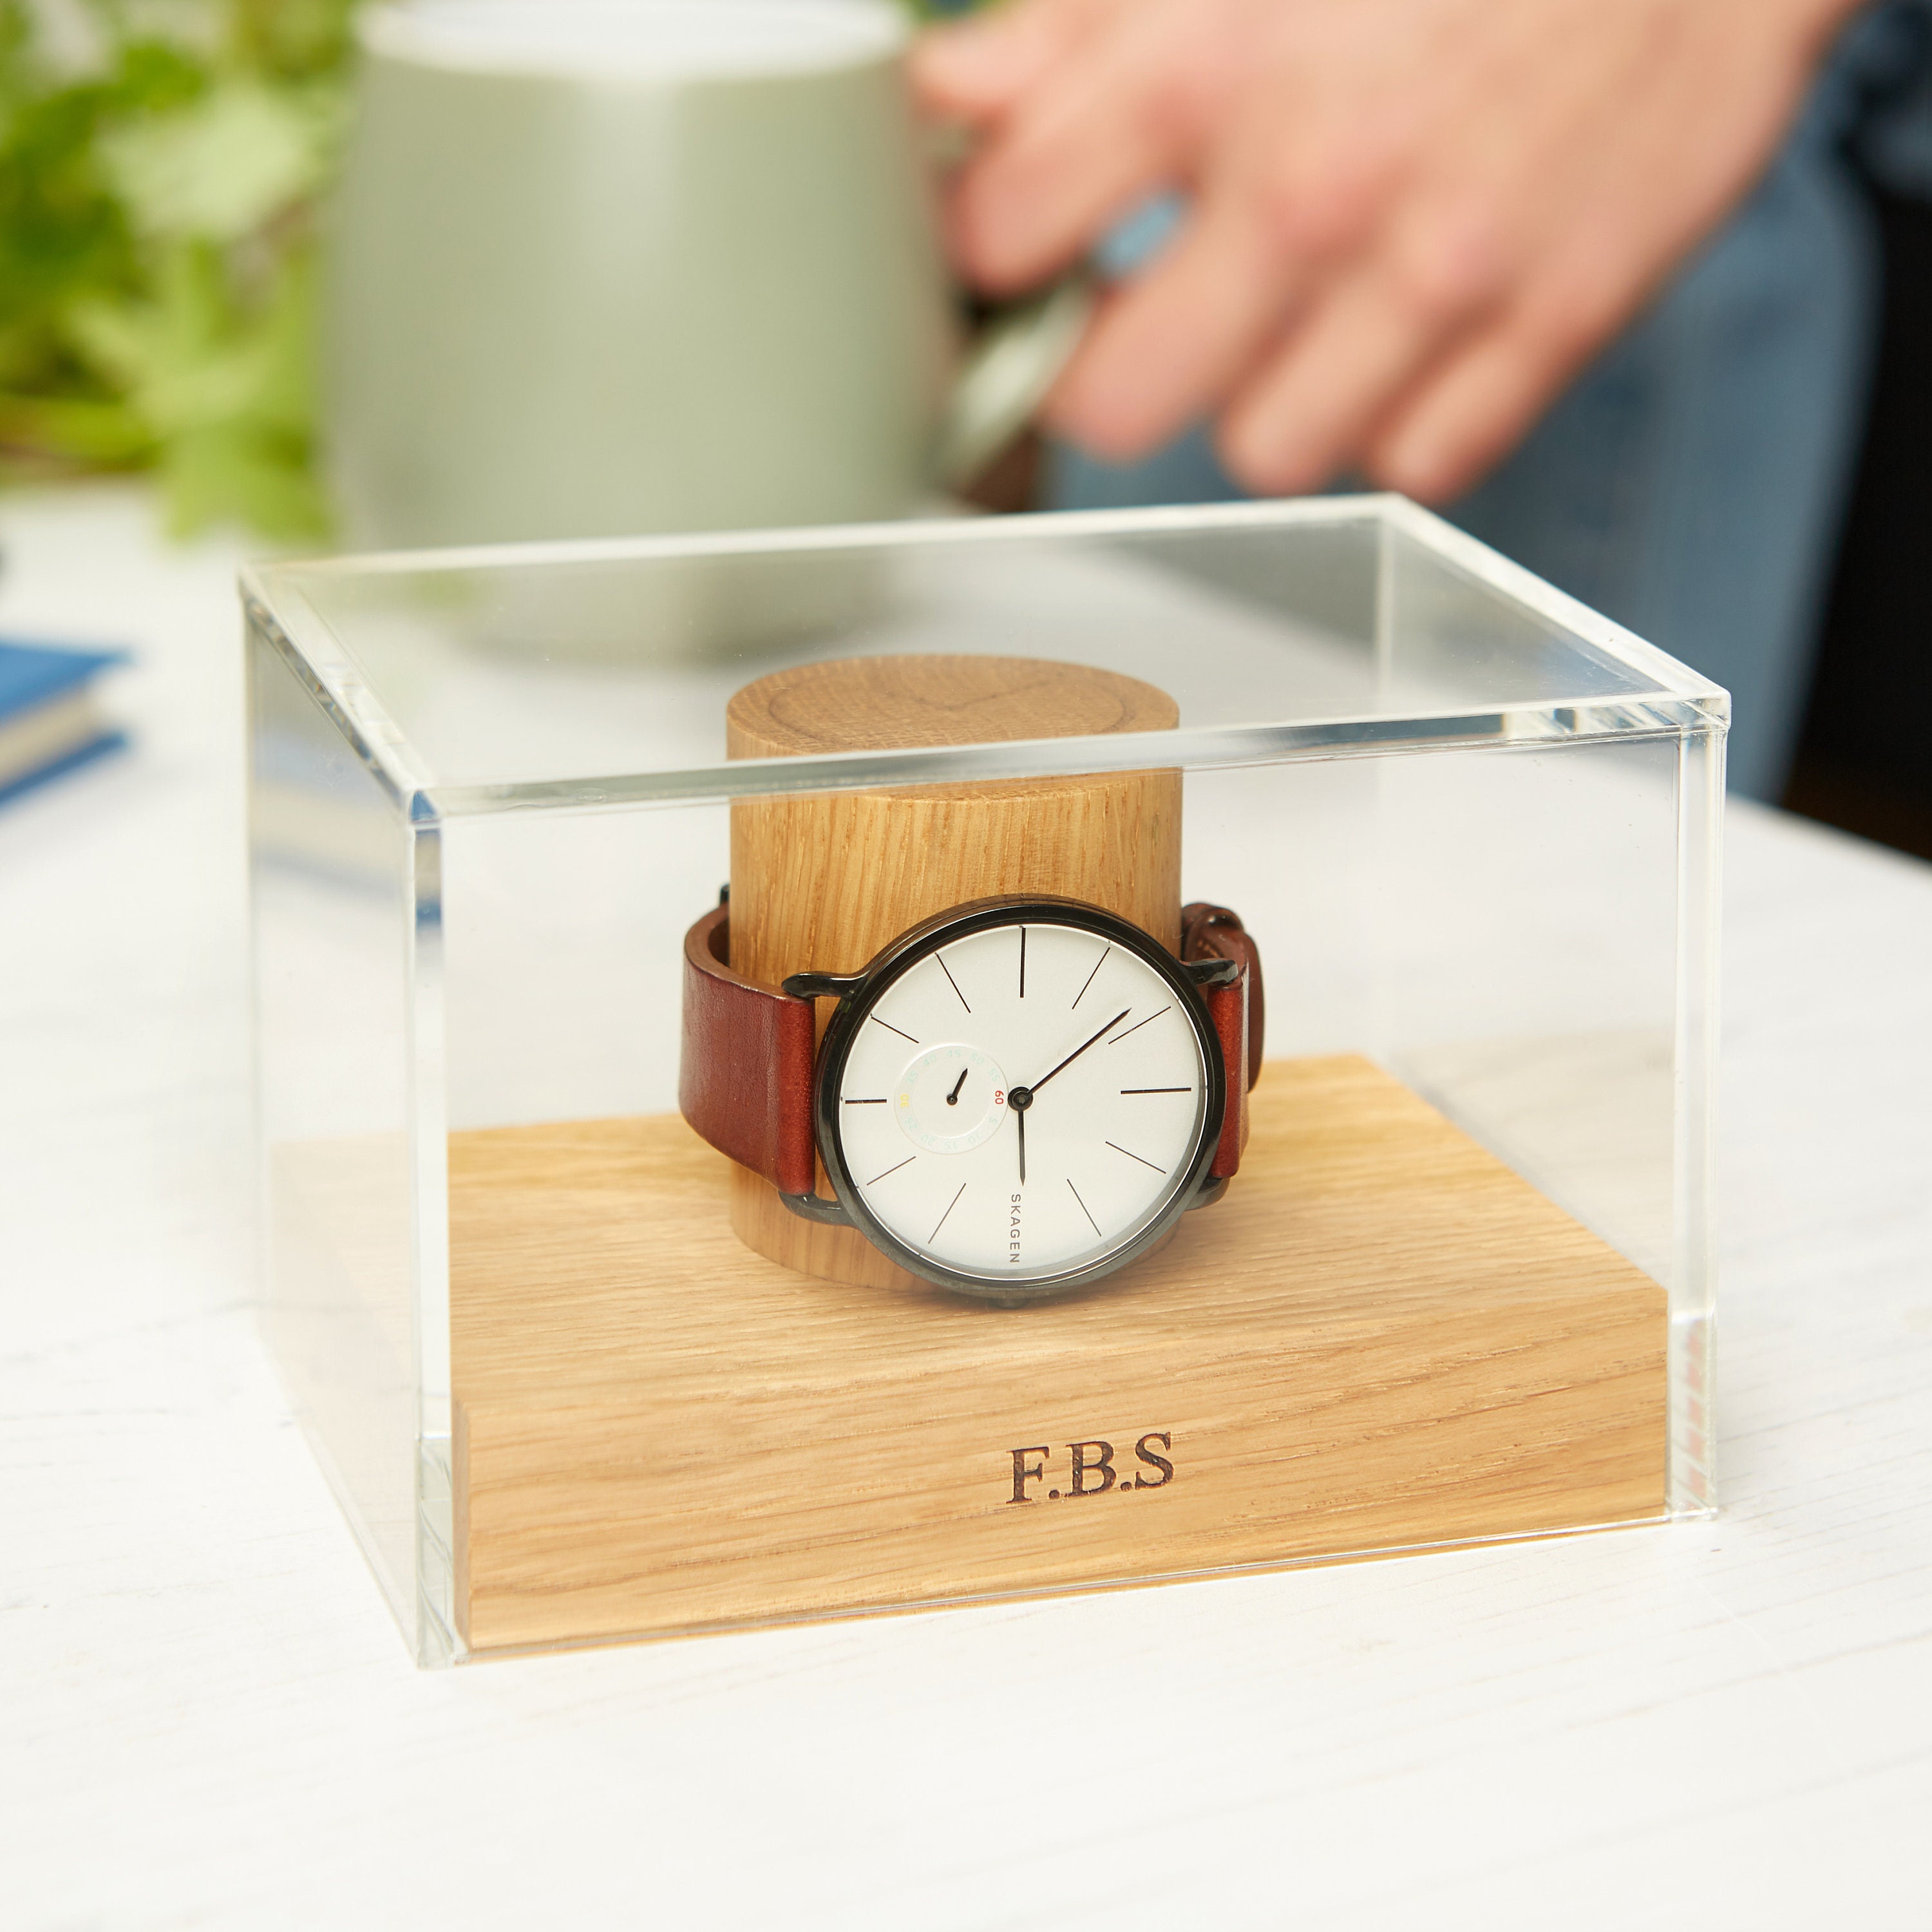 The Wedding Party Store Caja de reloj grabada para hombre, regalos  personalizados para él, regalo personalizado para marido y novio (negro)